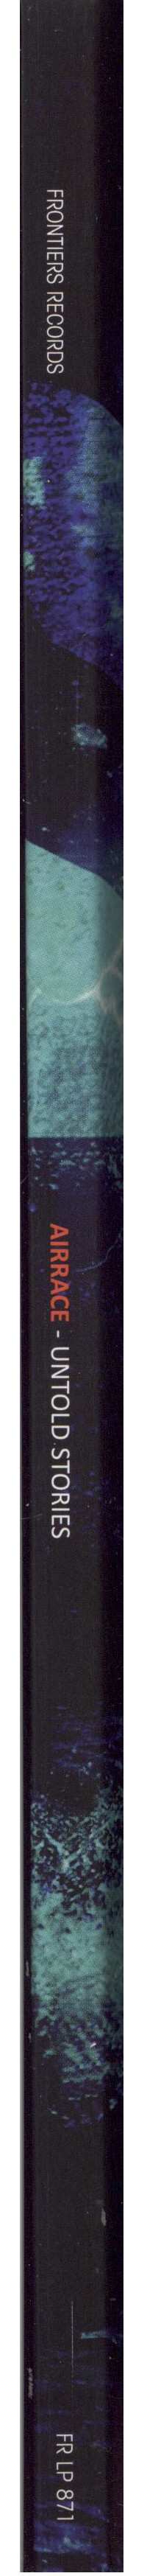 LP Airrace: Untold Stories 38237